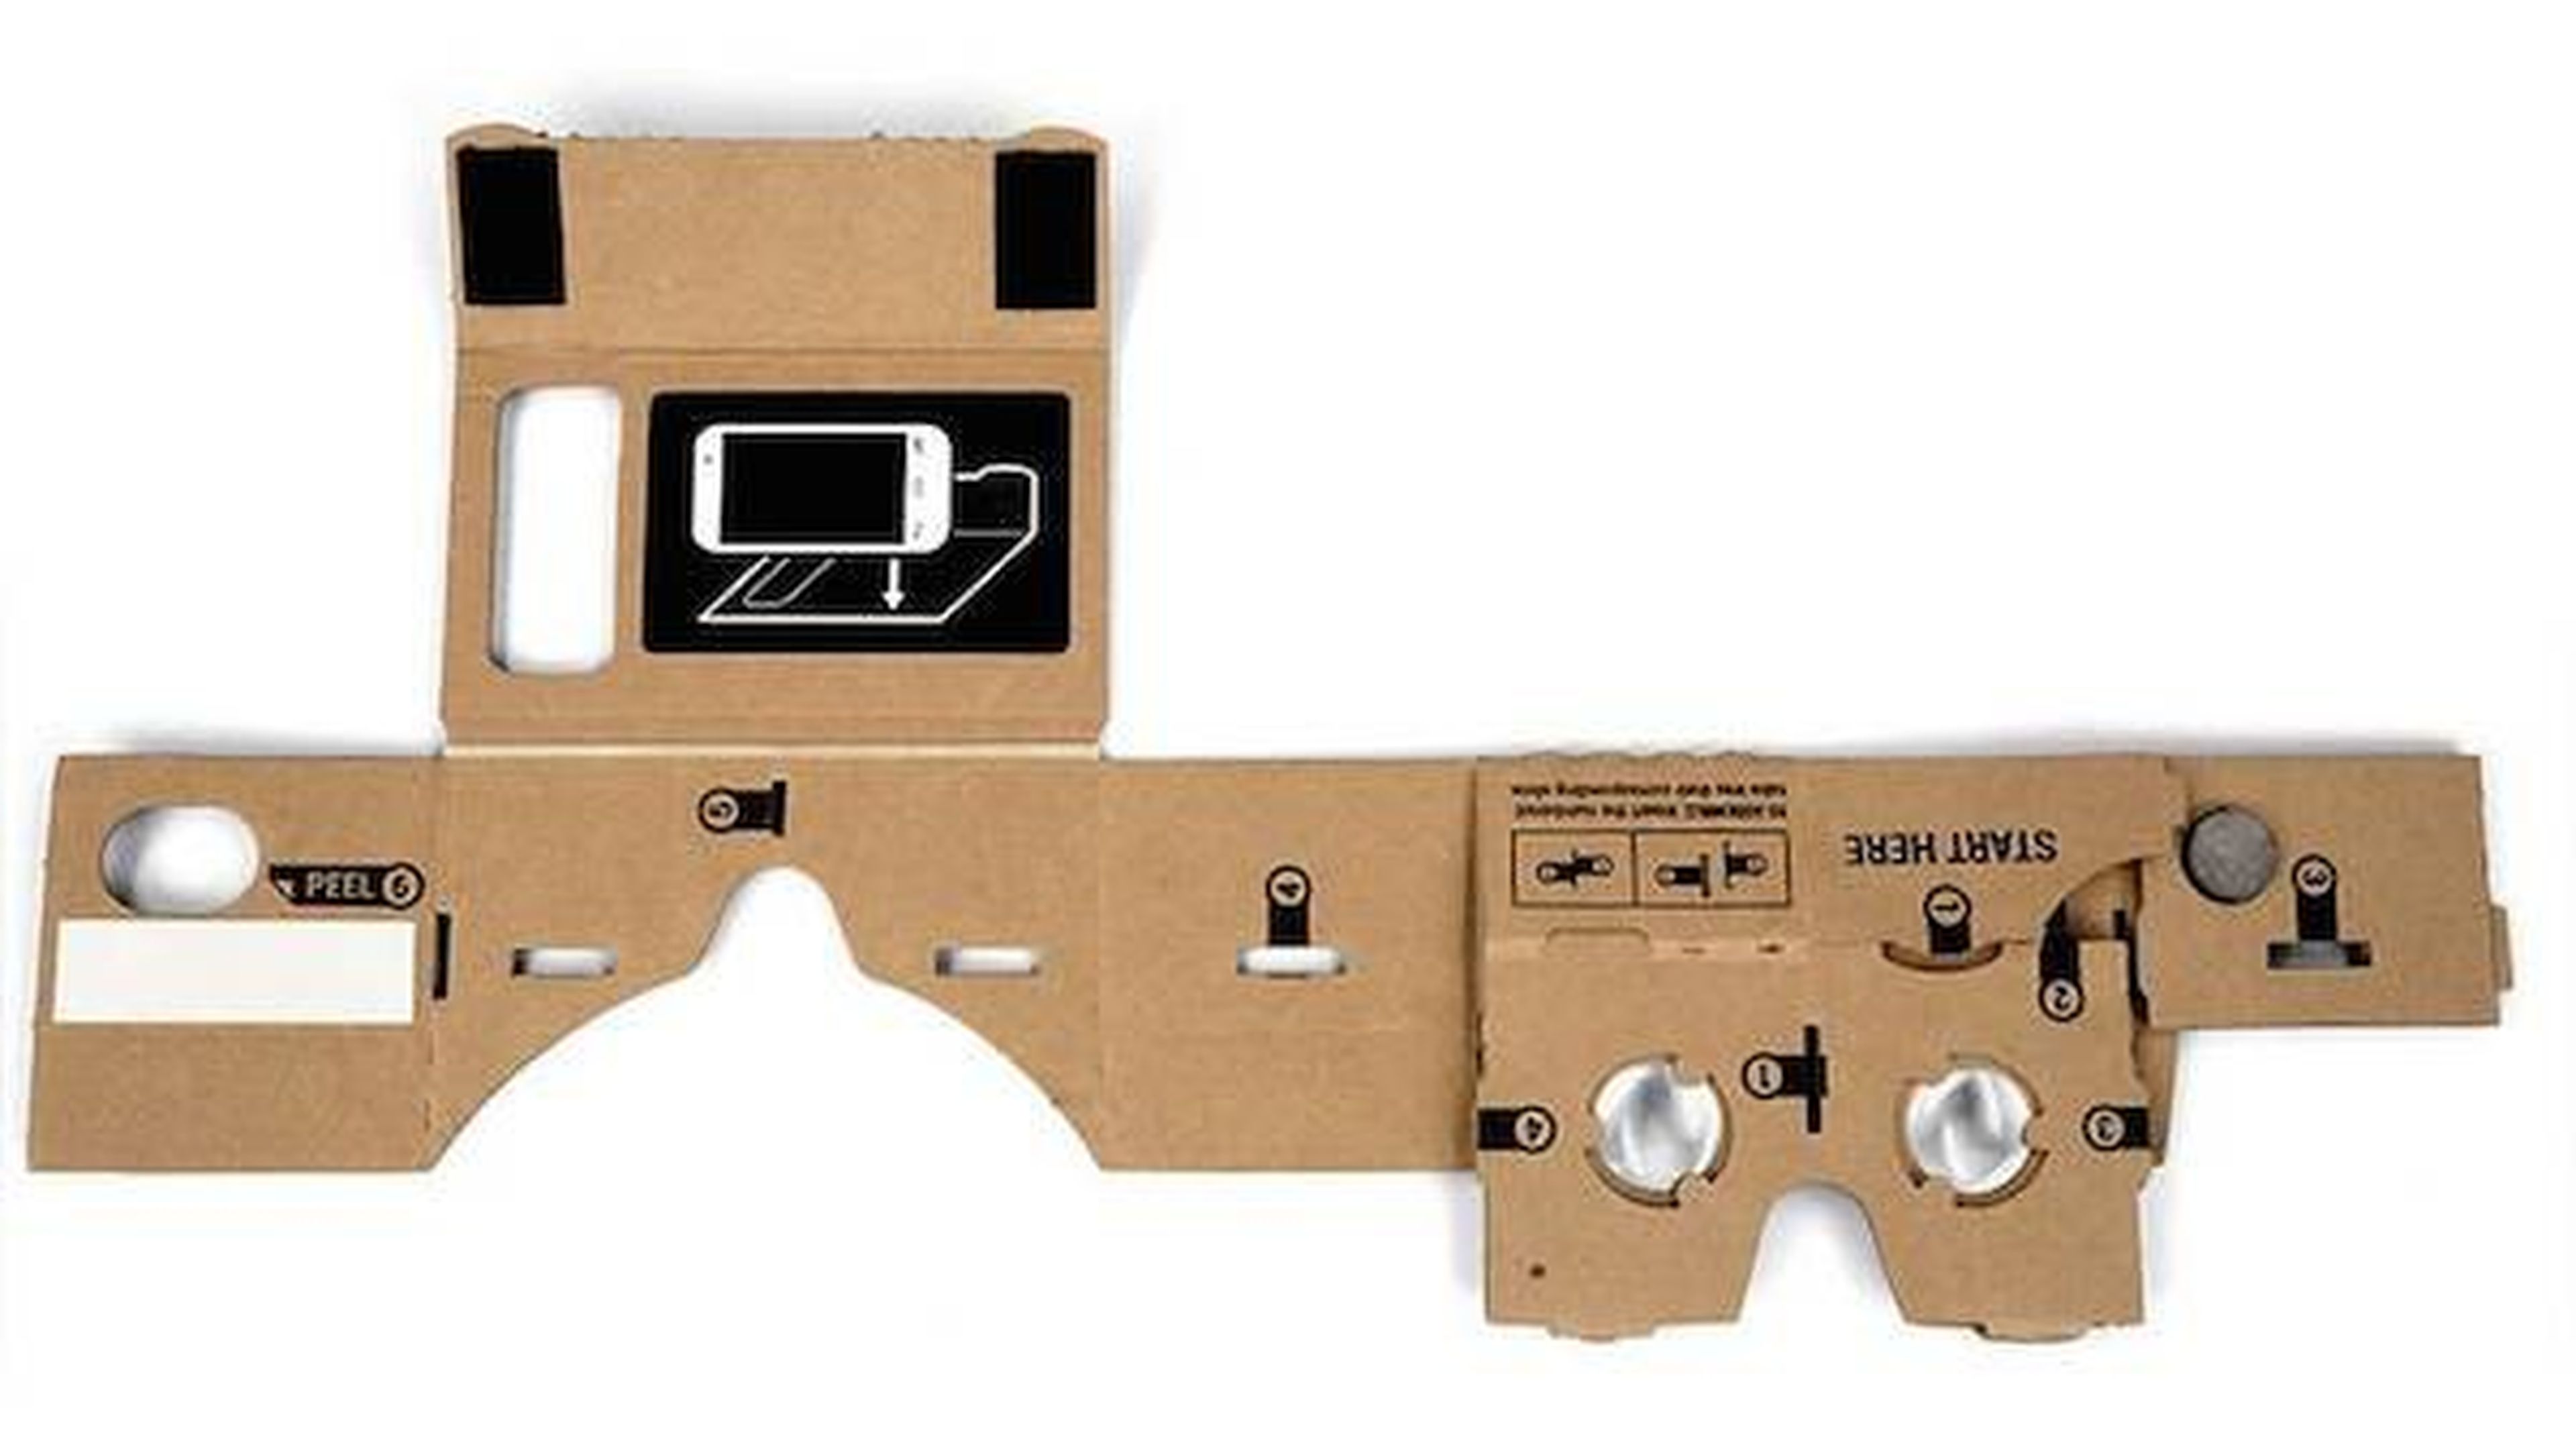 Arma tus propias gafas de realidad virtual con Cardboard